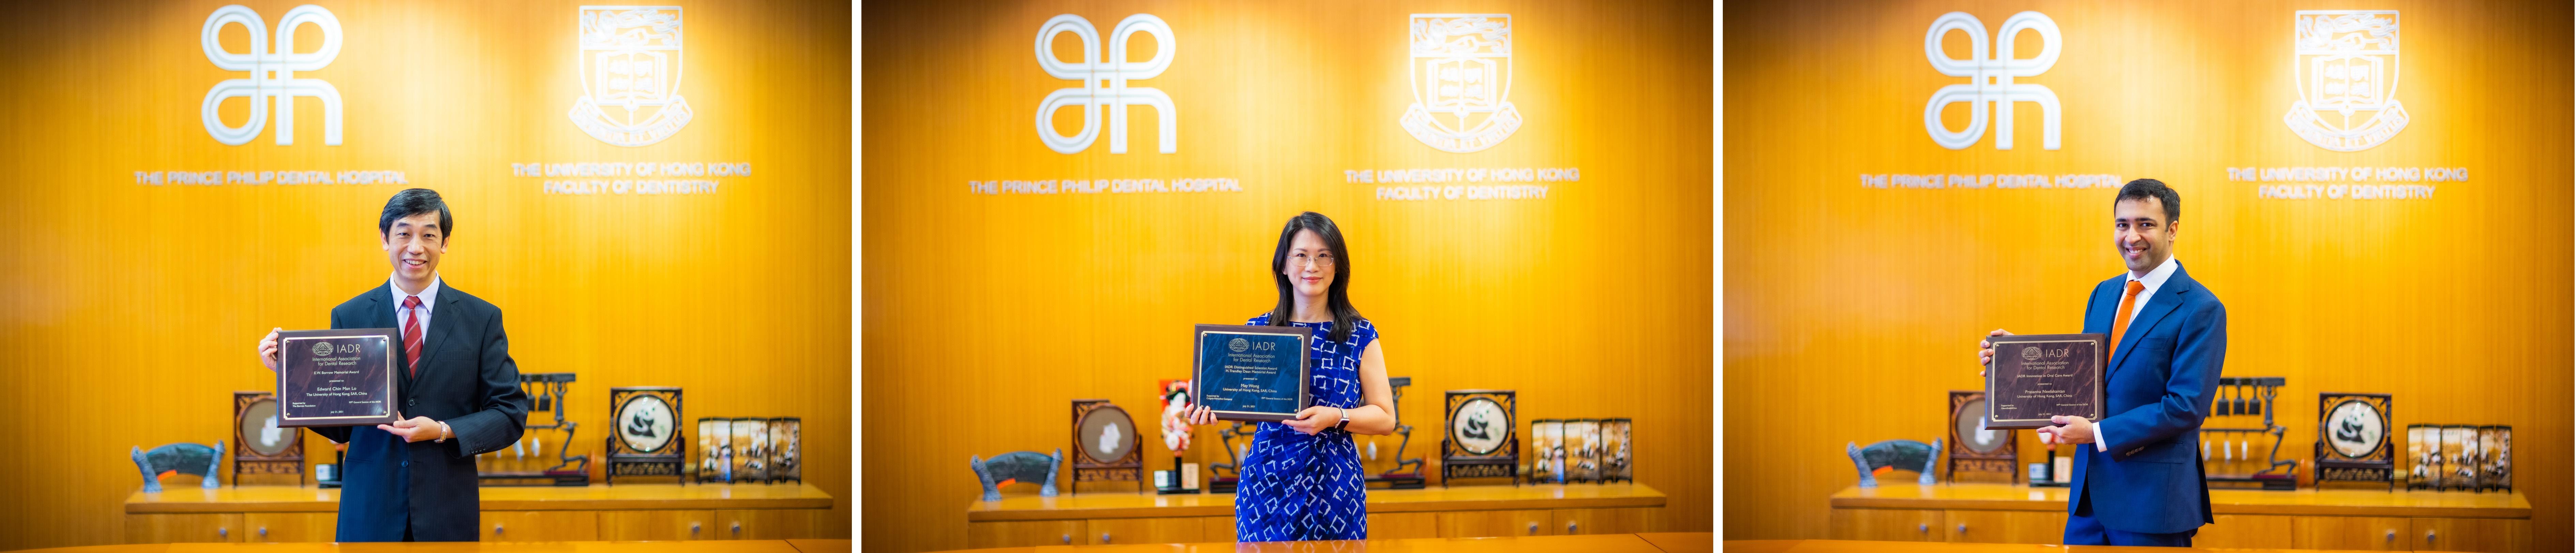 香港大学学院名人国际牙科研究协会 (IADR)